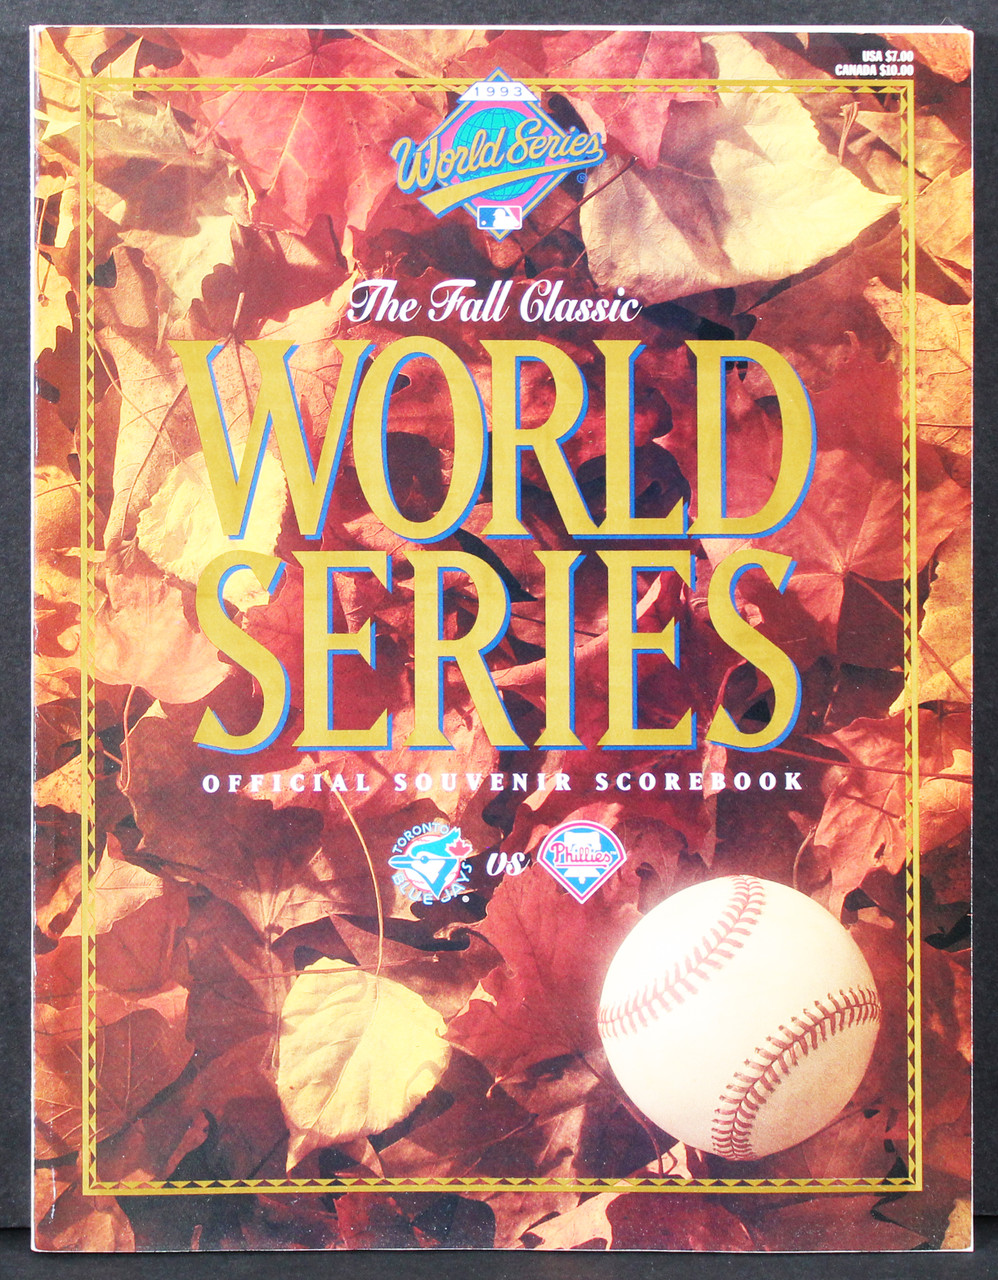 1993 World Series Blue Jays vs. Phillies Official Souvenir